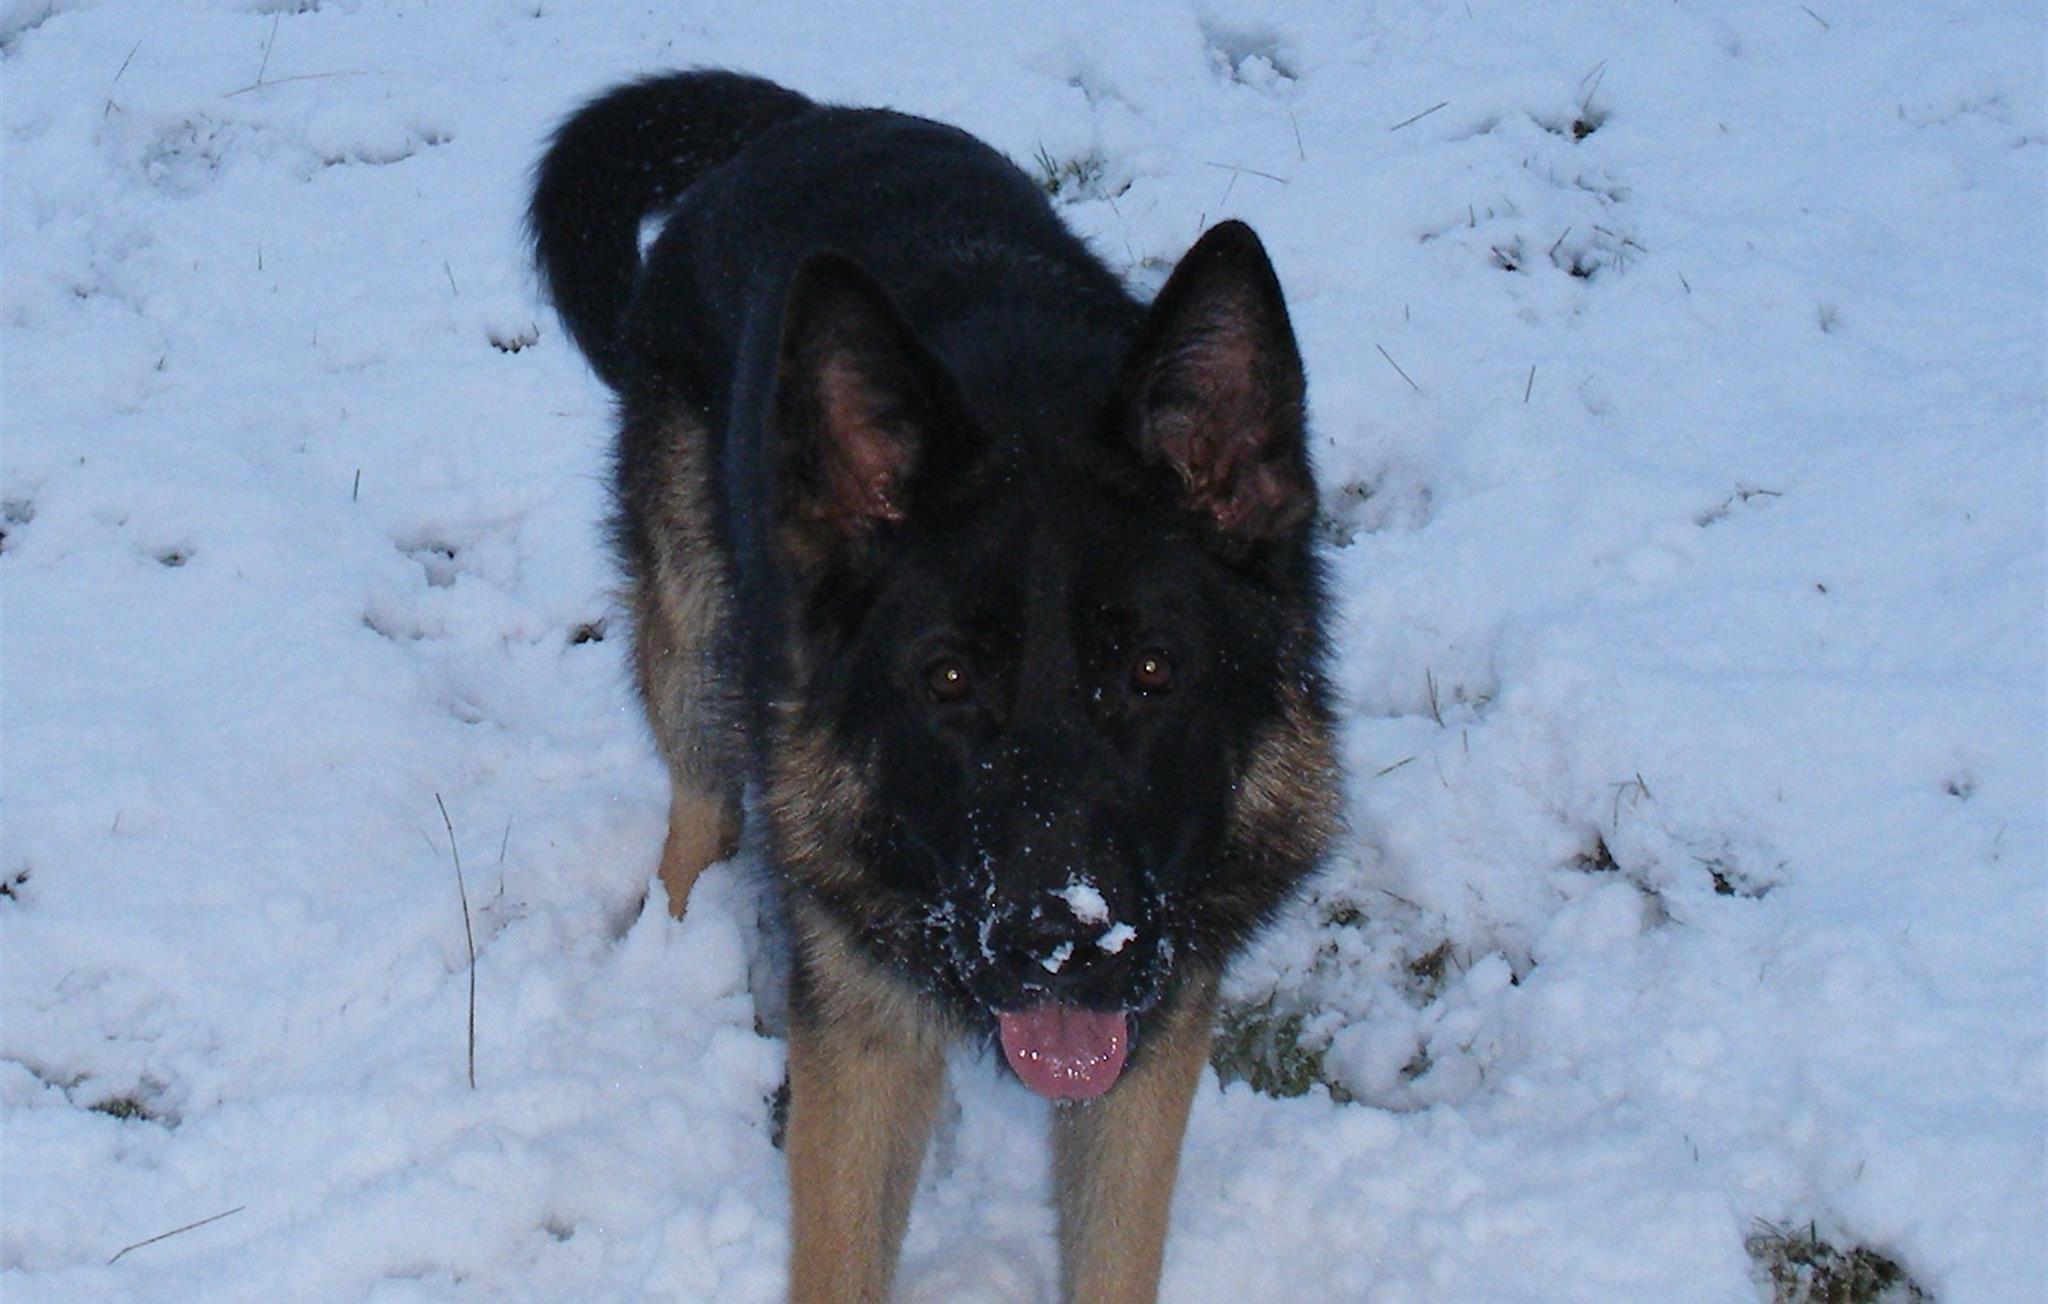 Dog enjoying the snow at Kerridge End